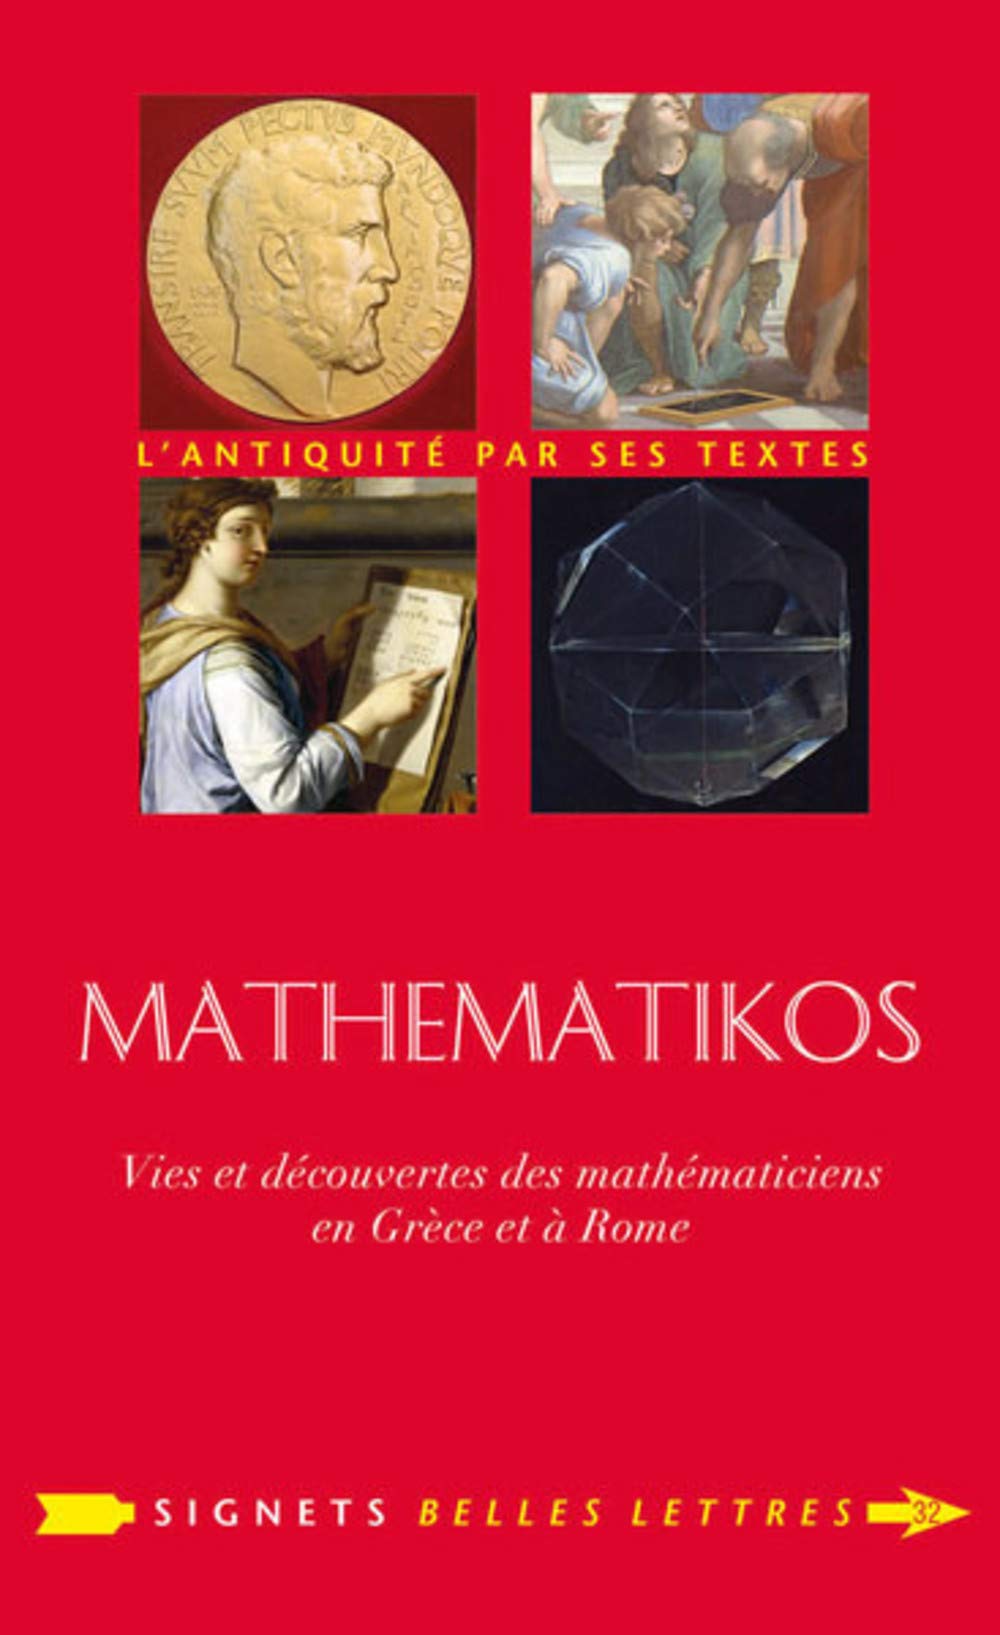 Mathematikos: Vies et découvertes des mathématiciens en Grèce et à Rome